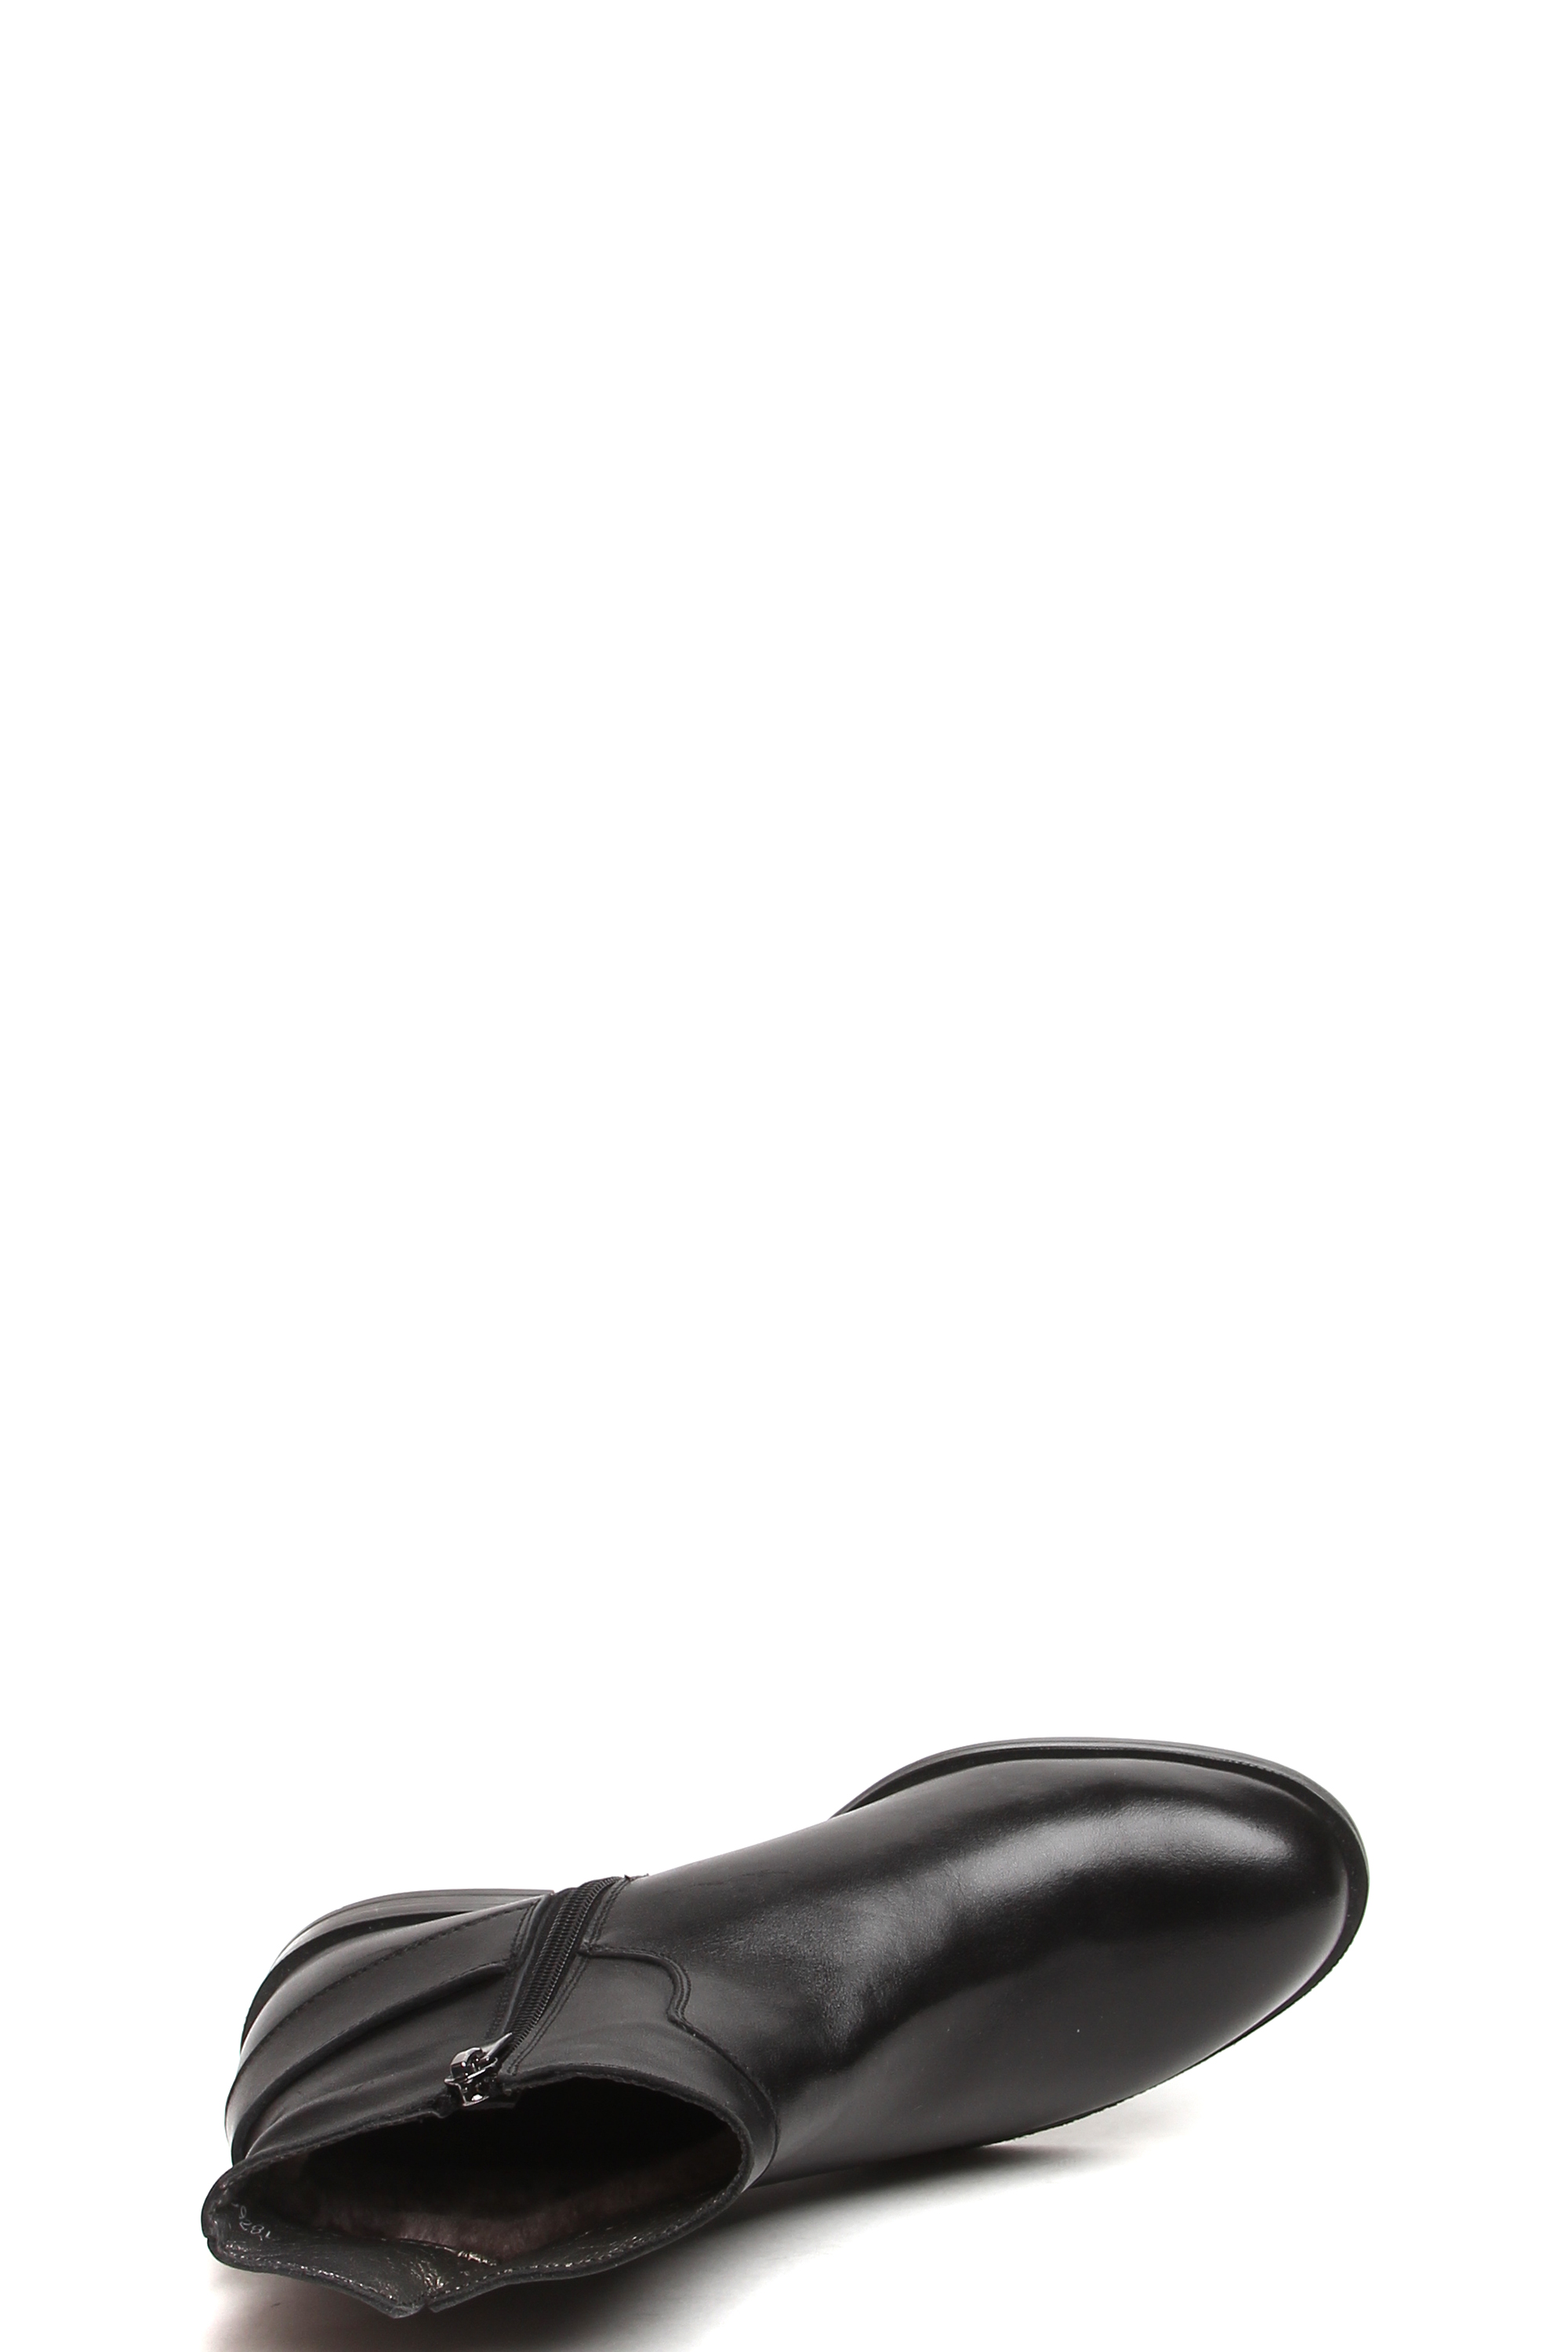 Ботинки MILANA 182696-3-110V черный - купить 9990